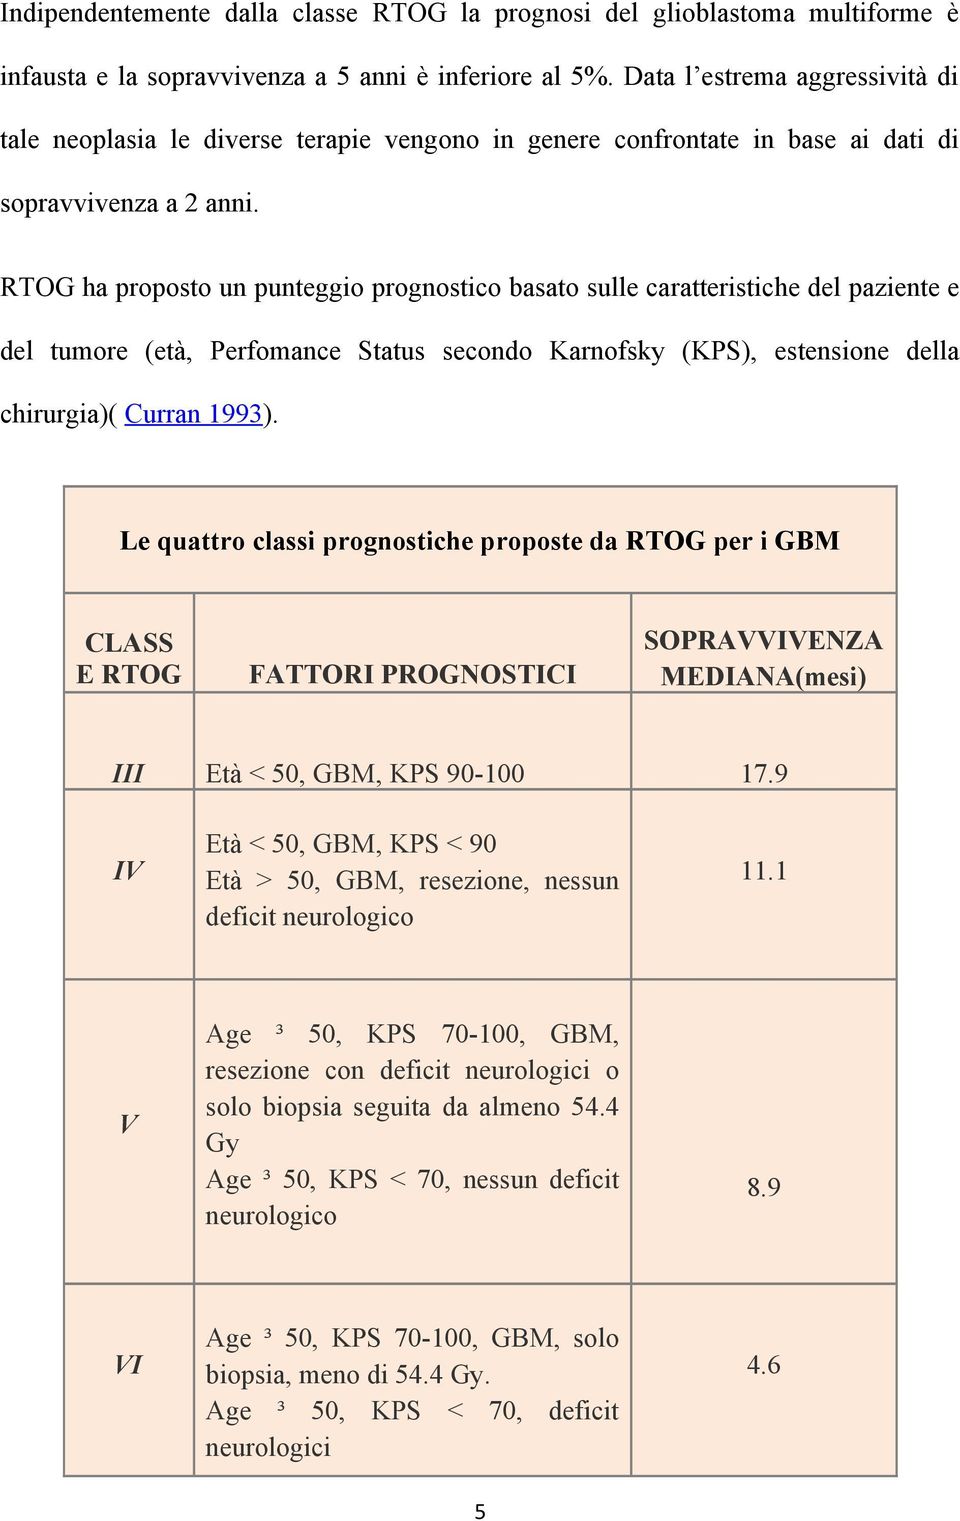 RTOG ha proposto un punteggio prognostico basato sulle caratteristiche del paziente e del tumore (età, Perfomance Status secondo Karnofsky (KPS), estensione della chirurgia)( Curran 1993).